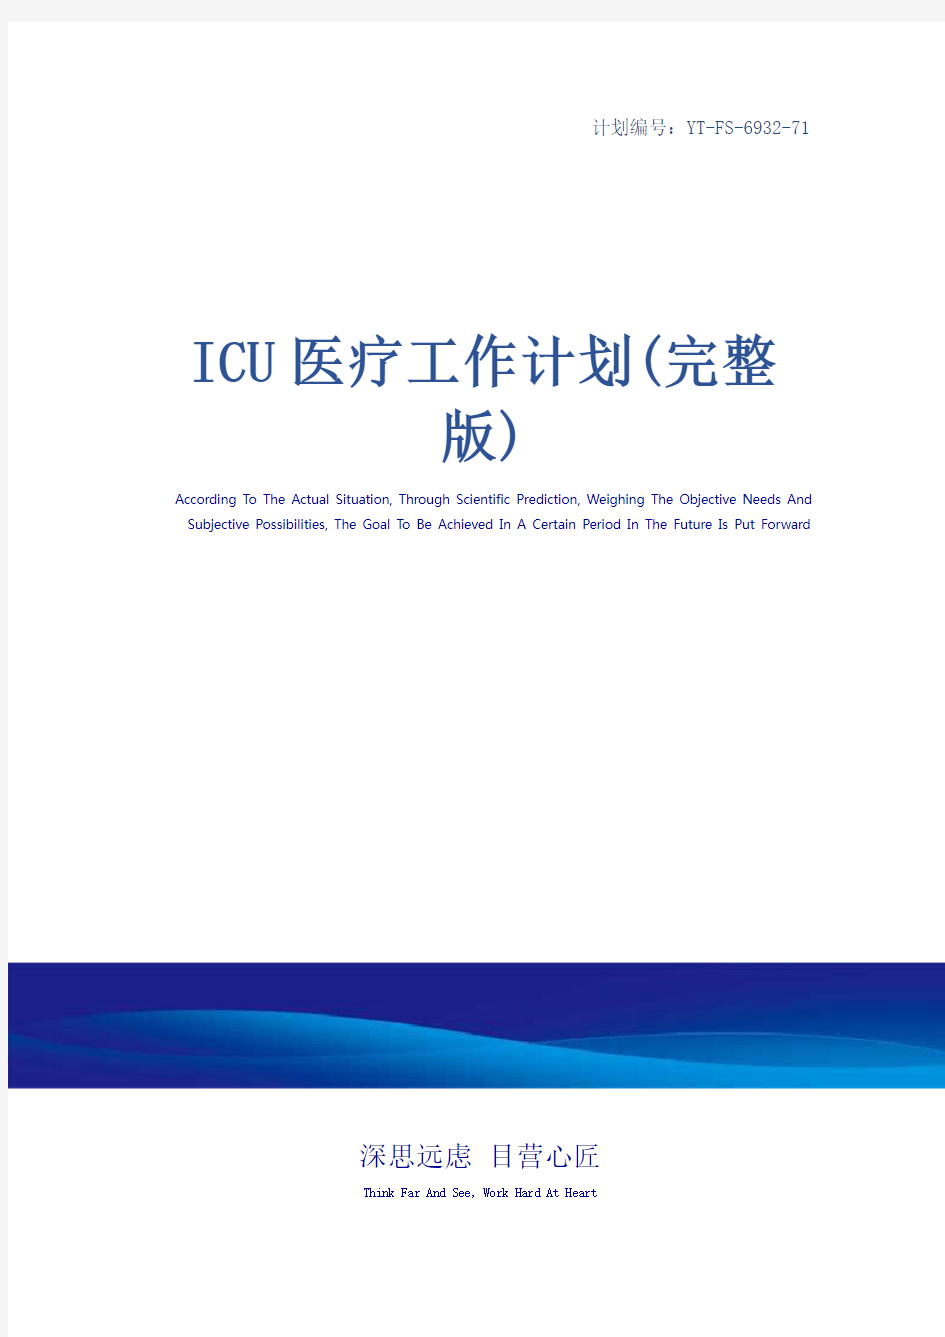 ICU医疗工作计划(完整版)